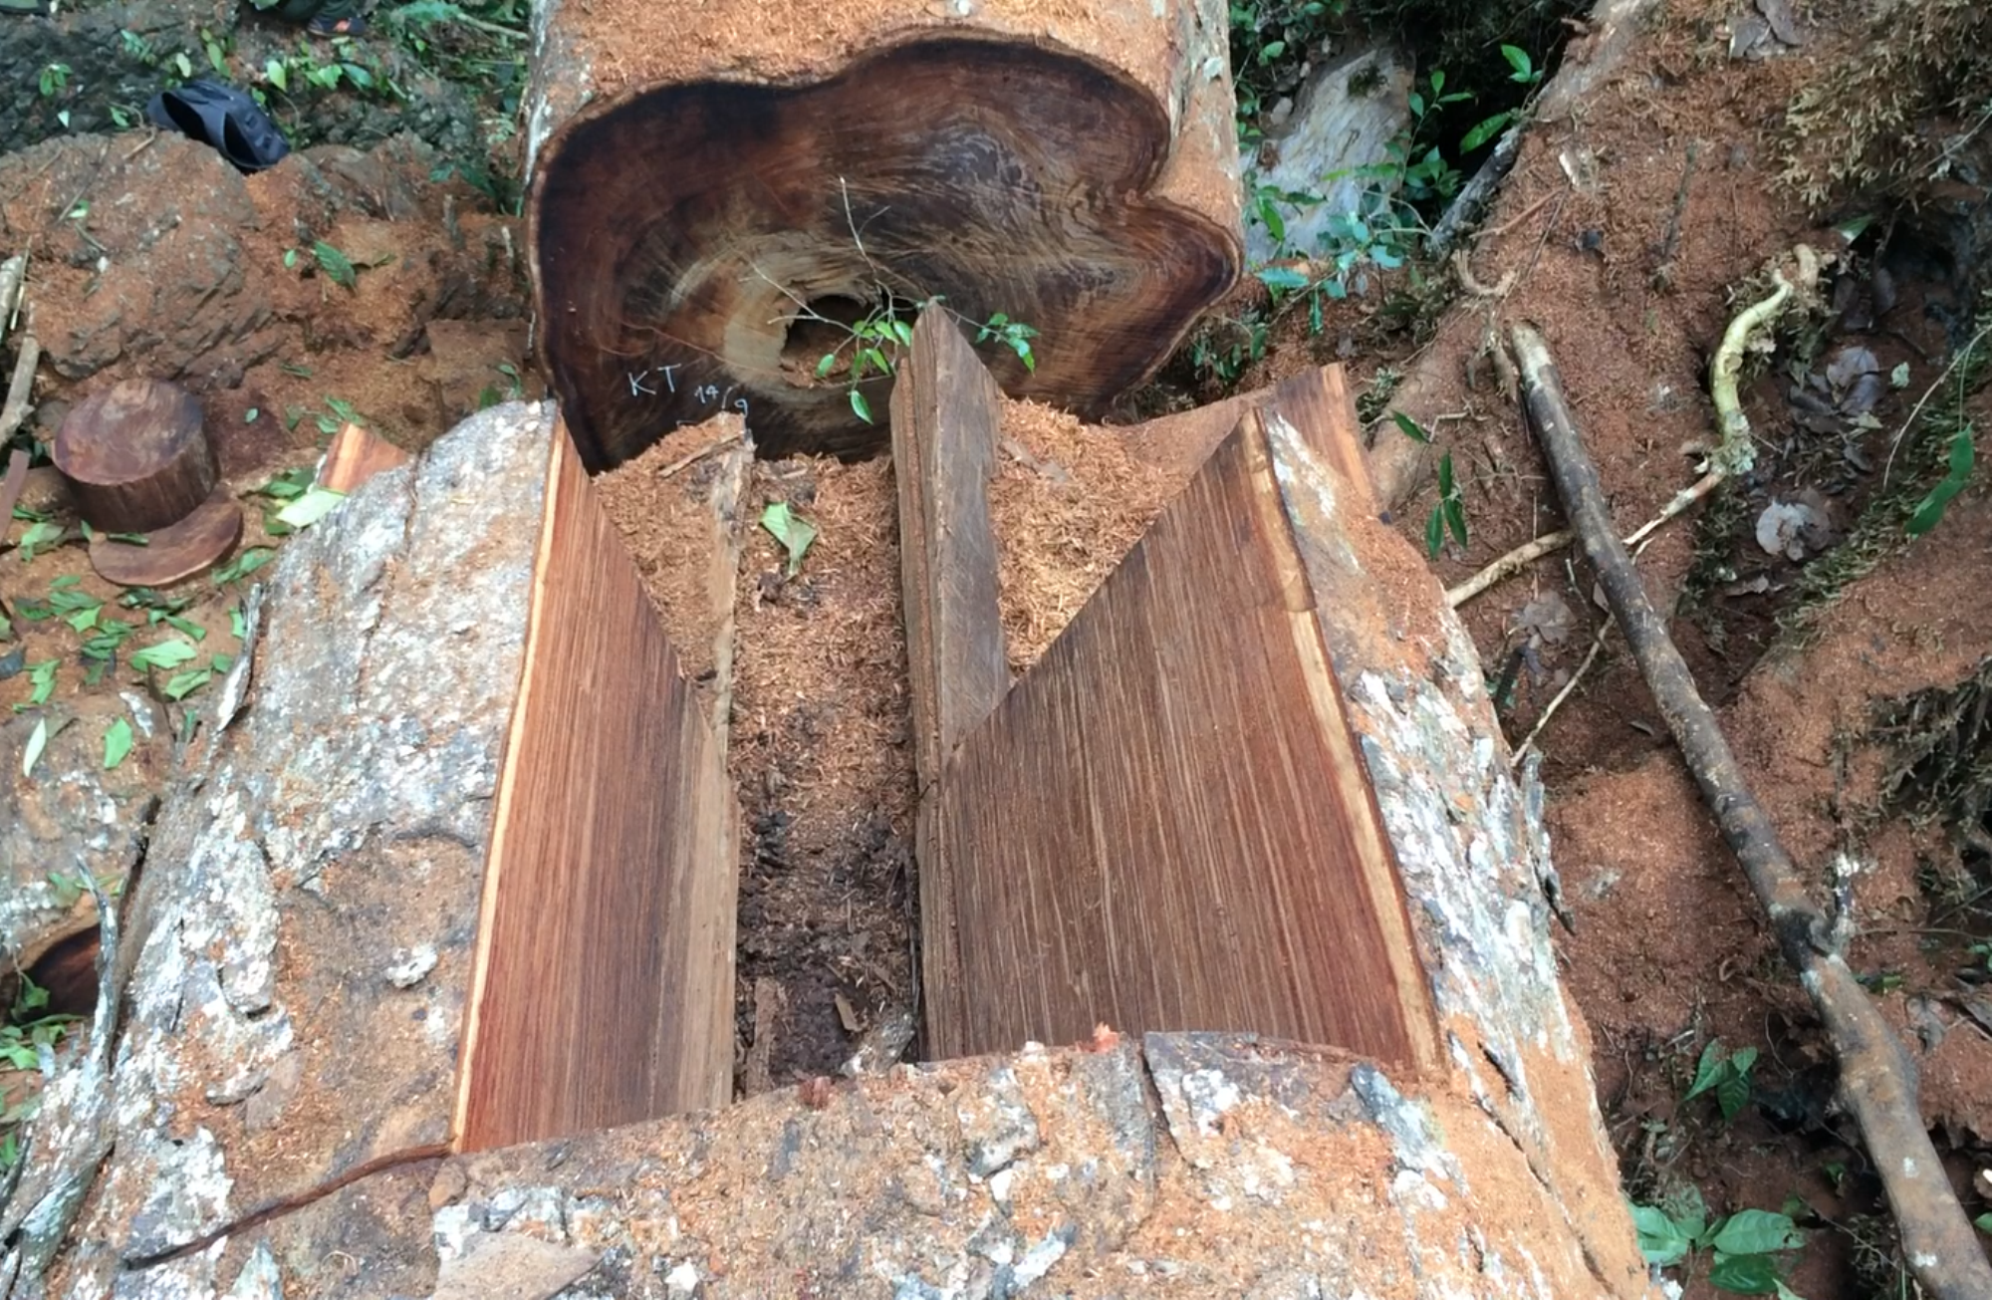 Tại Hà Giang, gần một thập kỷ nay, hầu như năm nào cũng xảy ra những vụ phá rừng lớn, gây thiệt hại hàng trăm m3 gỗ trong rừng đặc dụng. (Ảnh: Vietnam+)